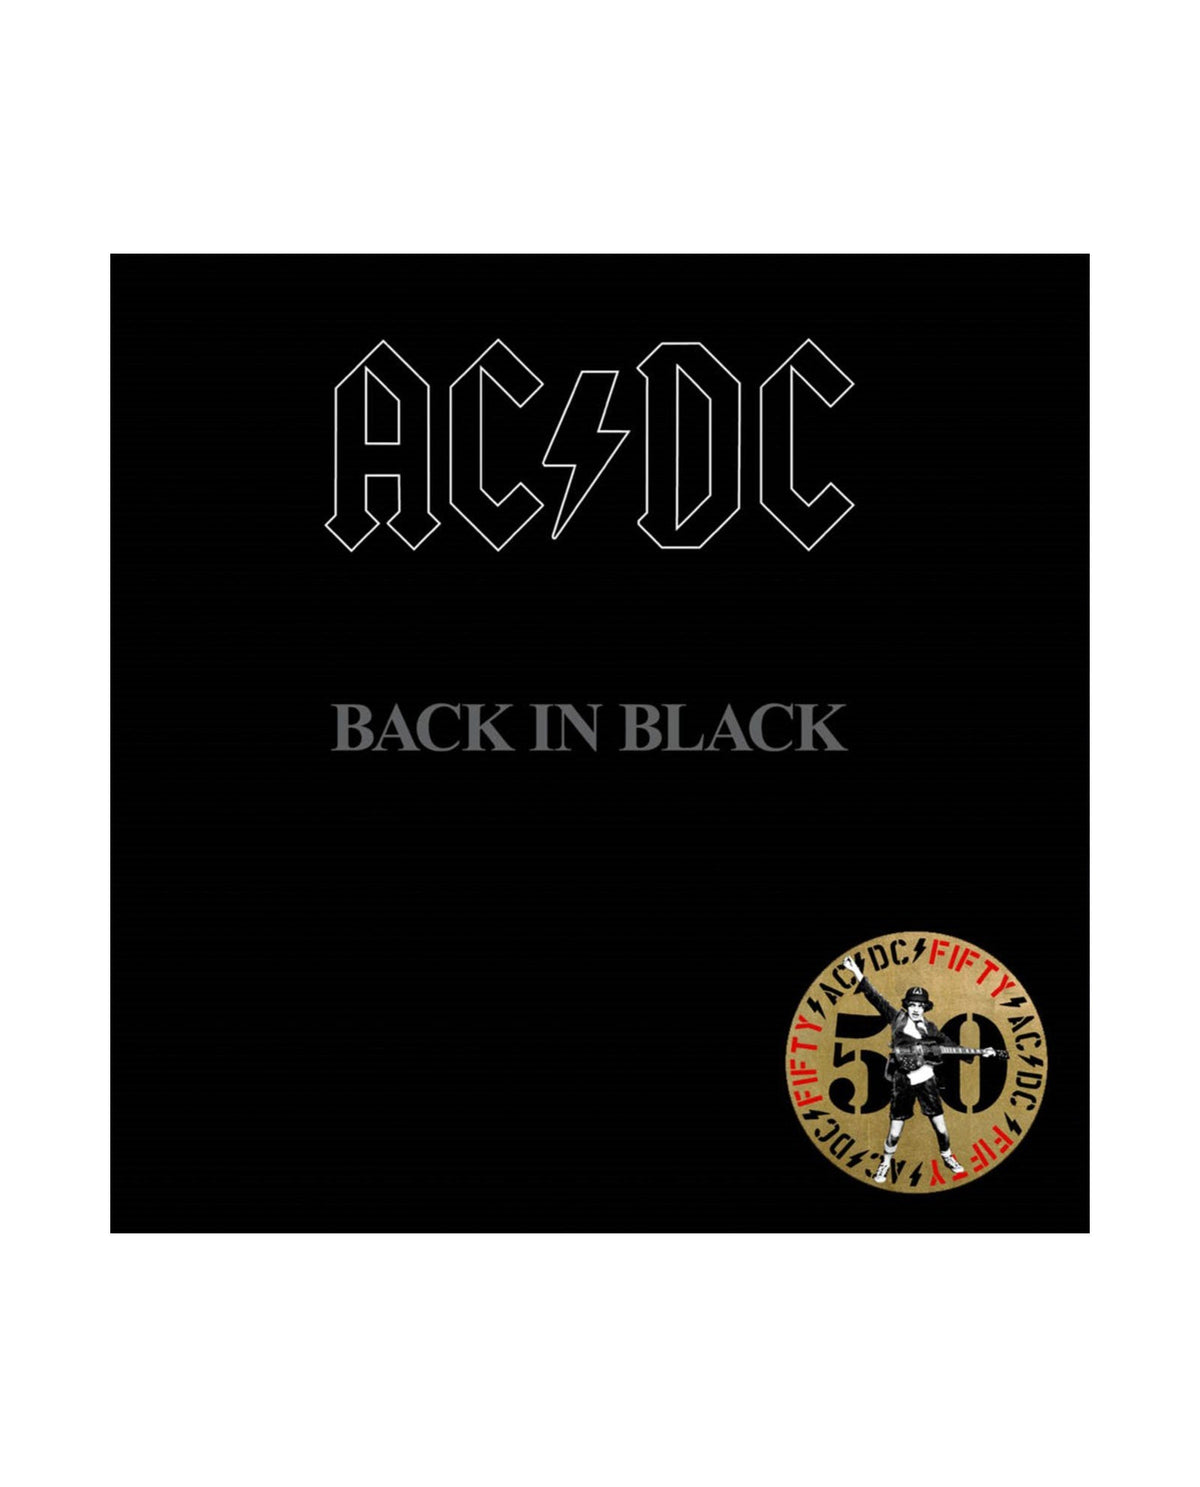 AC/DC - LP Vinilo Blanco y Negro "Back in Black (Exclusive Version)" Ed. 50 aniversario - D2fy · Rocktud - Rocktud